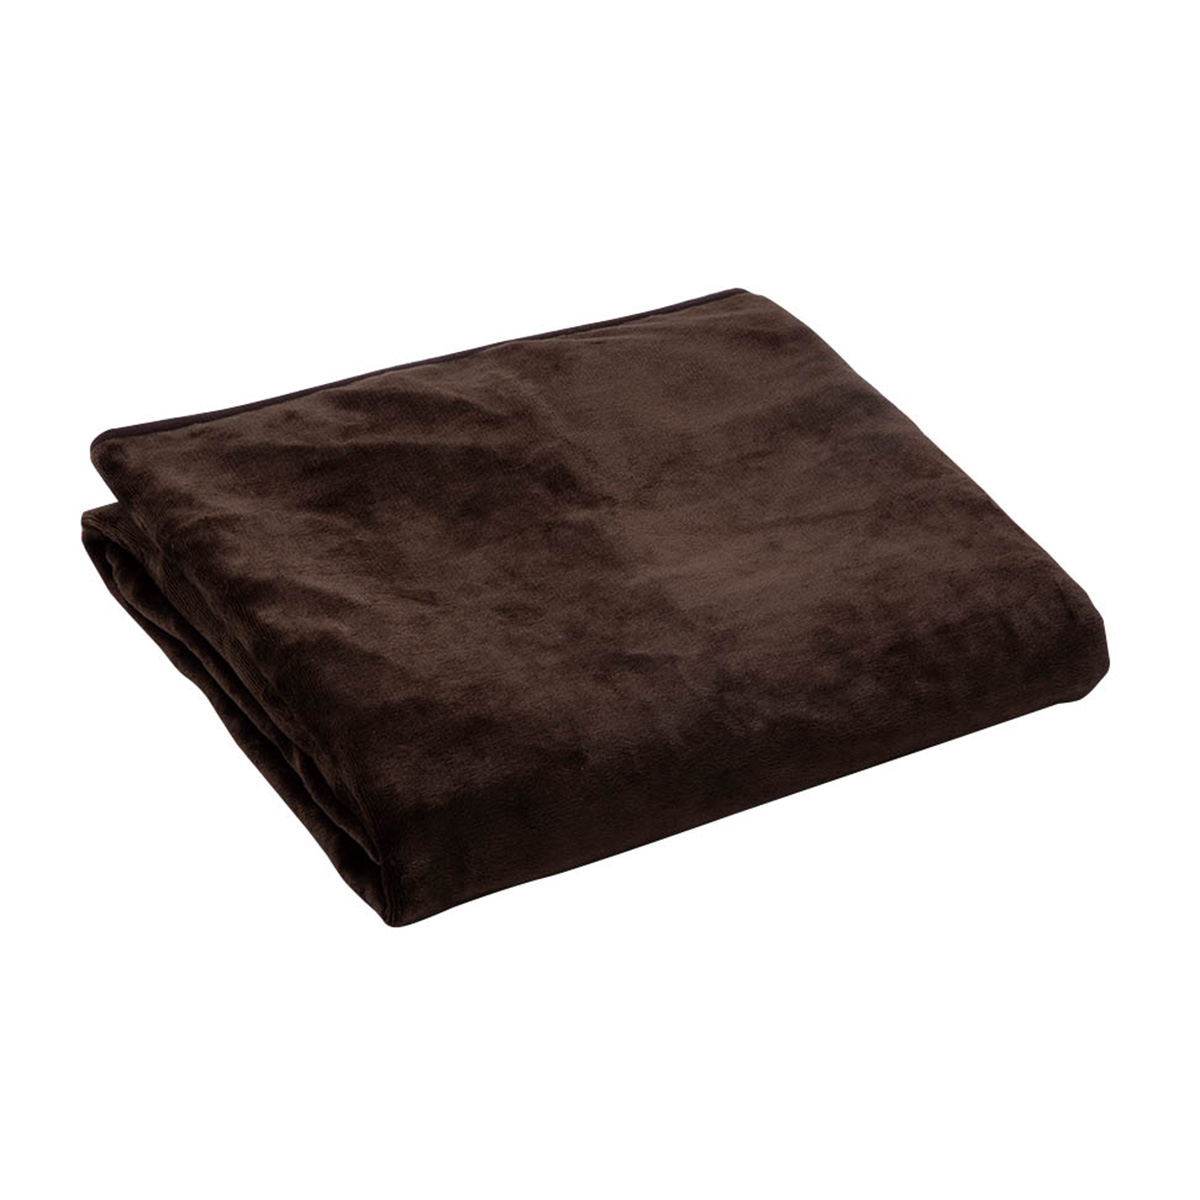 電気掛敷毛布 フランネル ブラウン 約188×130cm